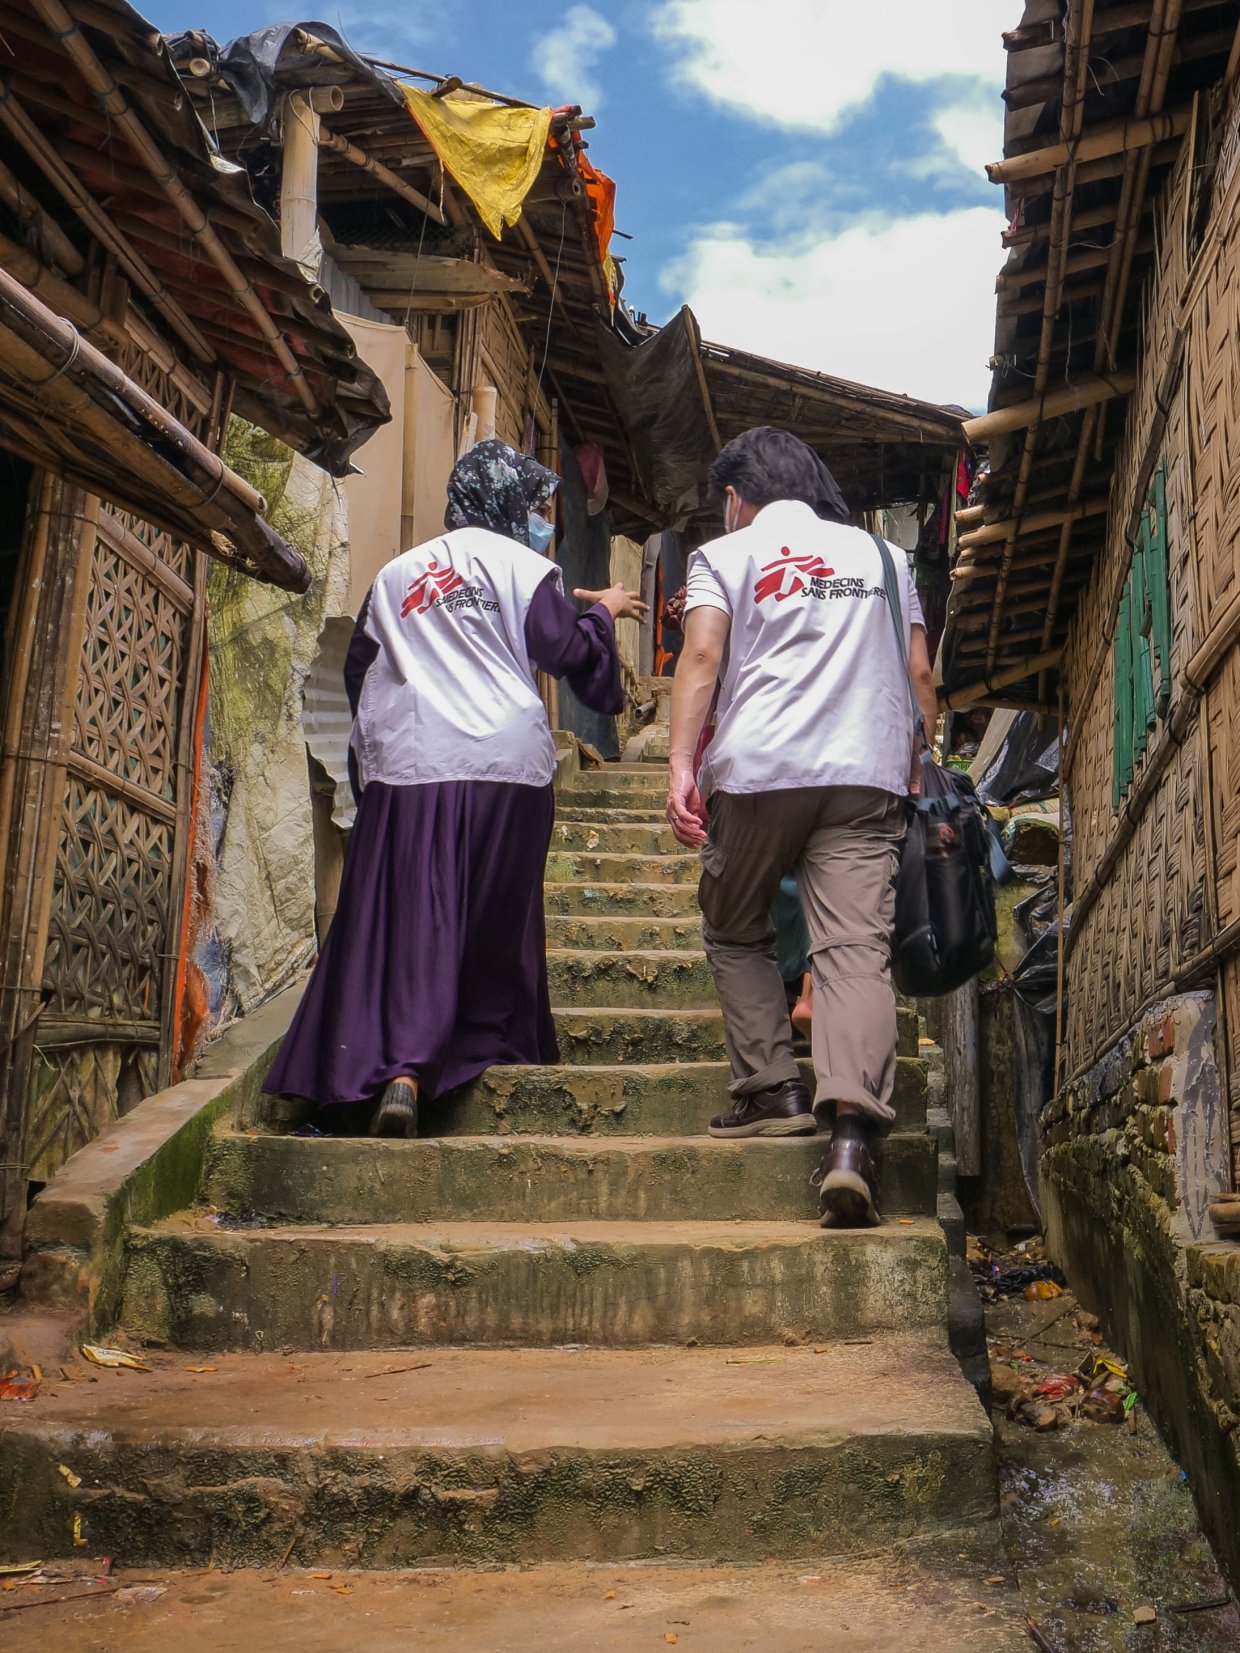 Två medarbetare med Läkare Utan Gränsers logga på ryggarna går upp för en trappa i Cox's Bazar.